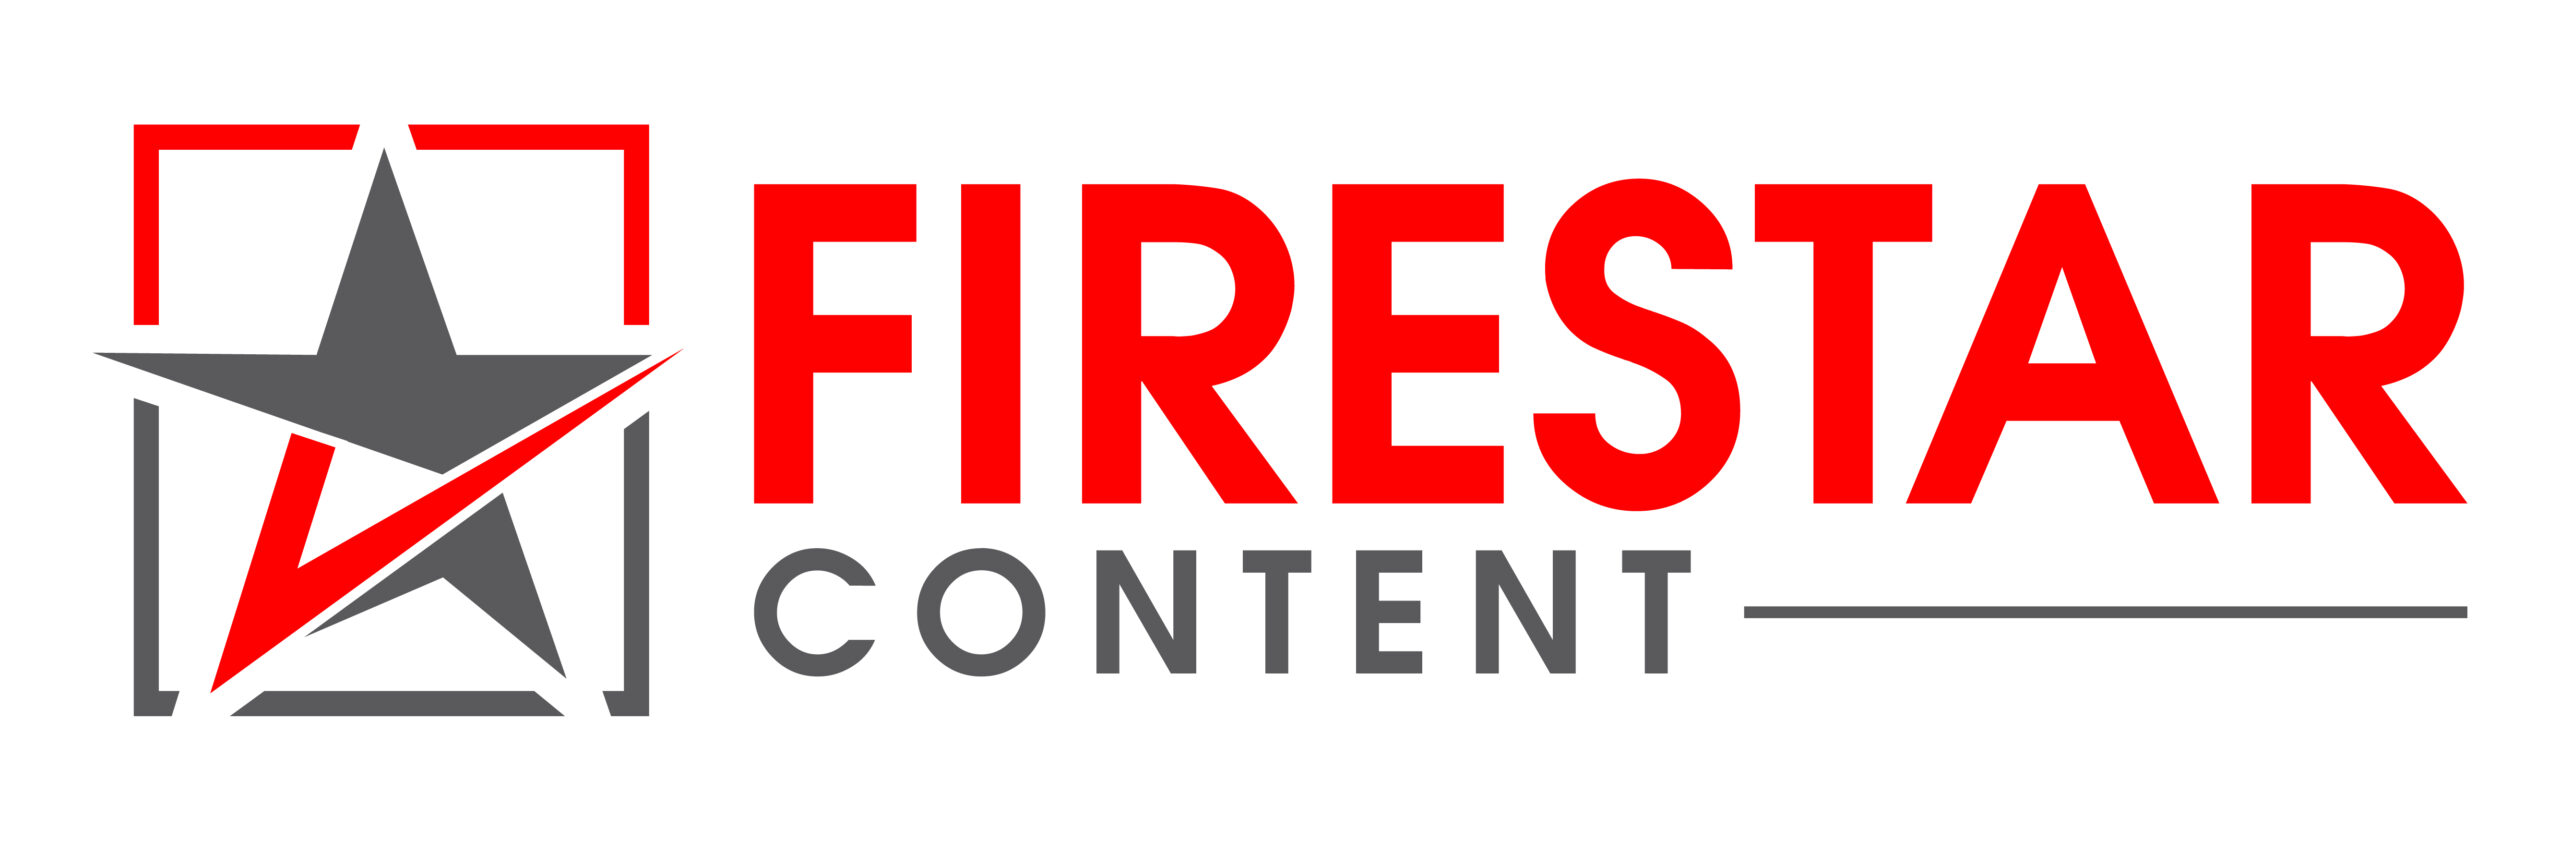 Firestarcontent